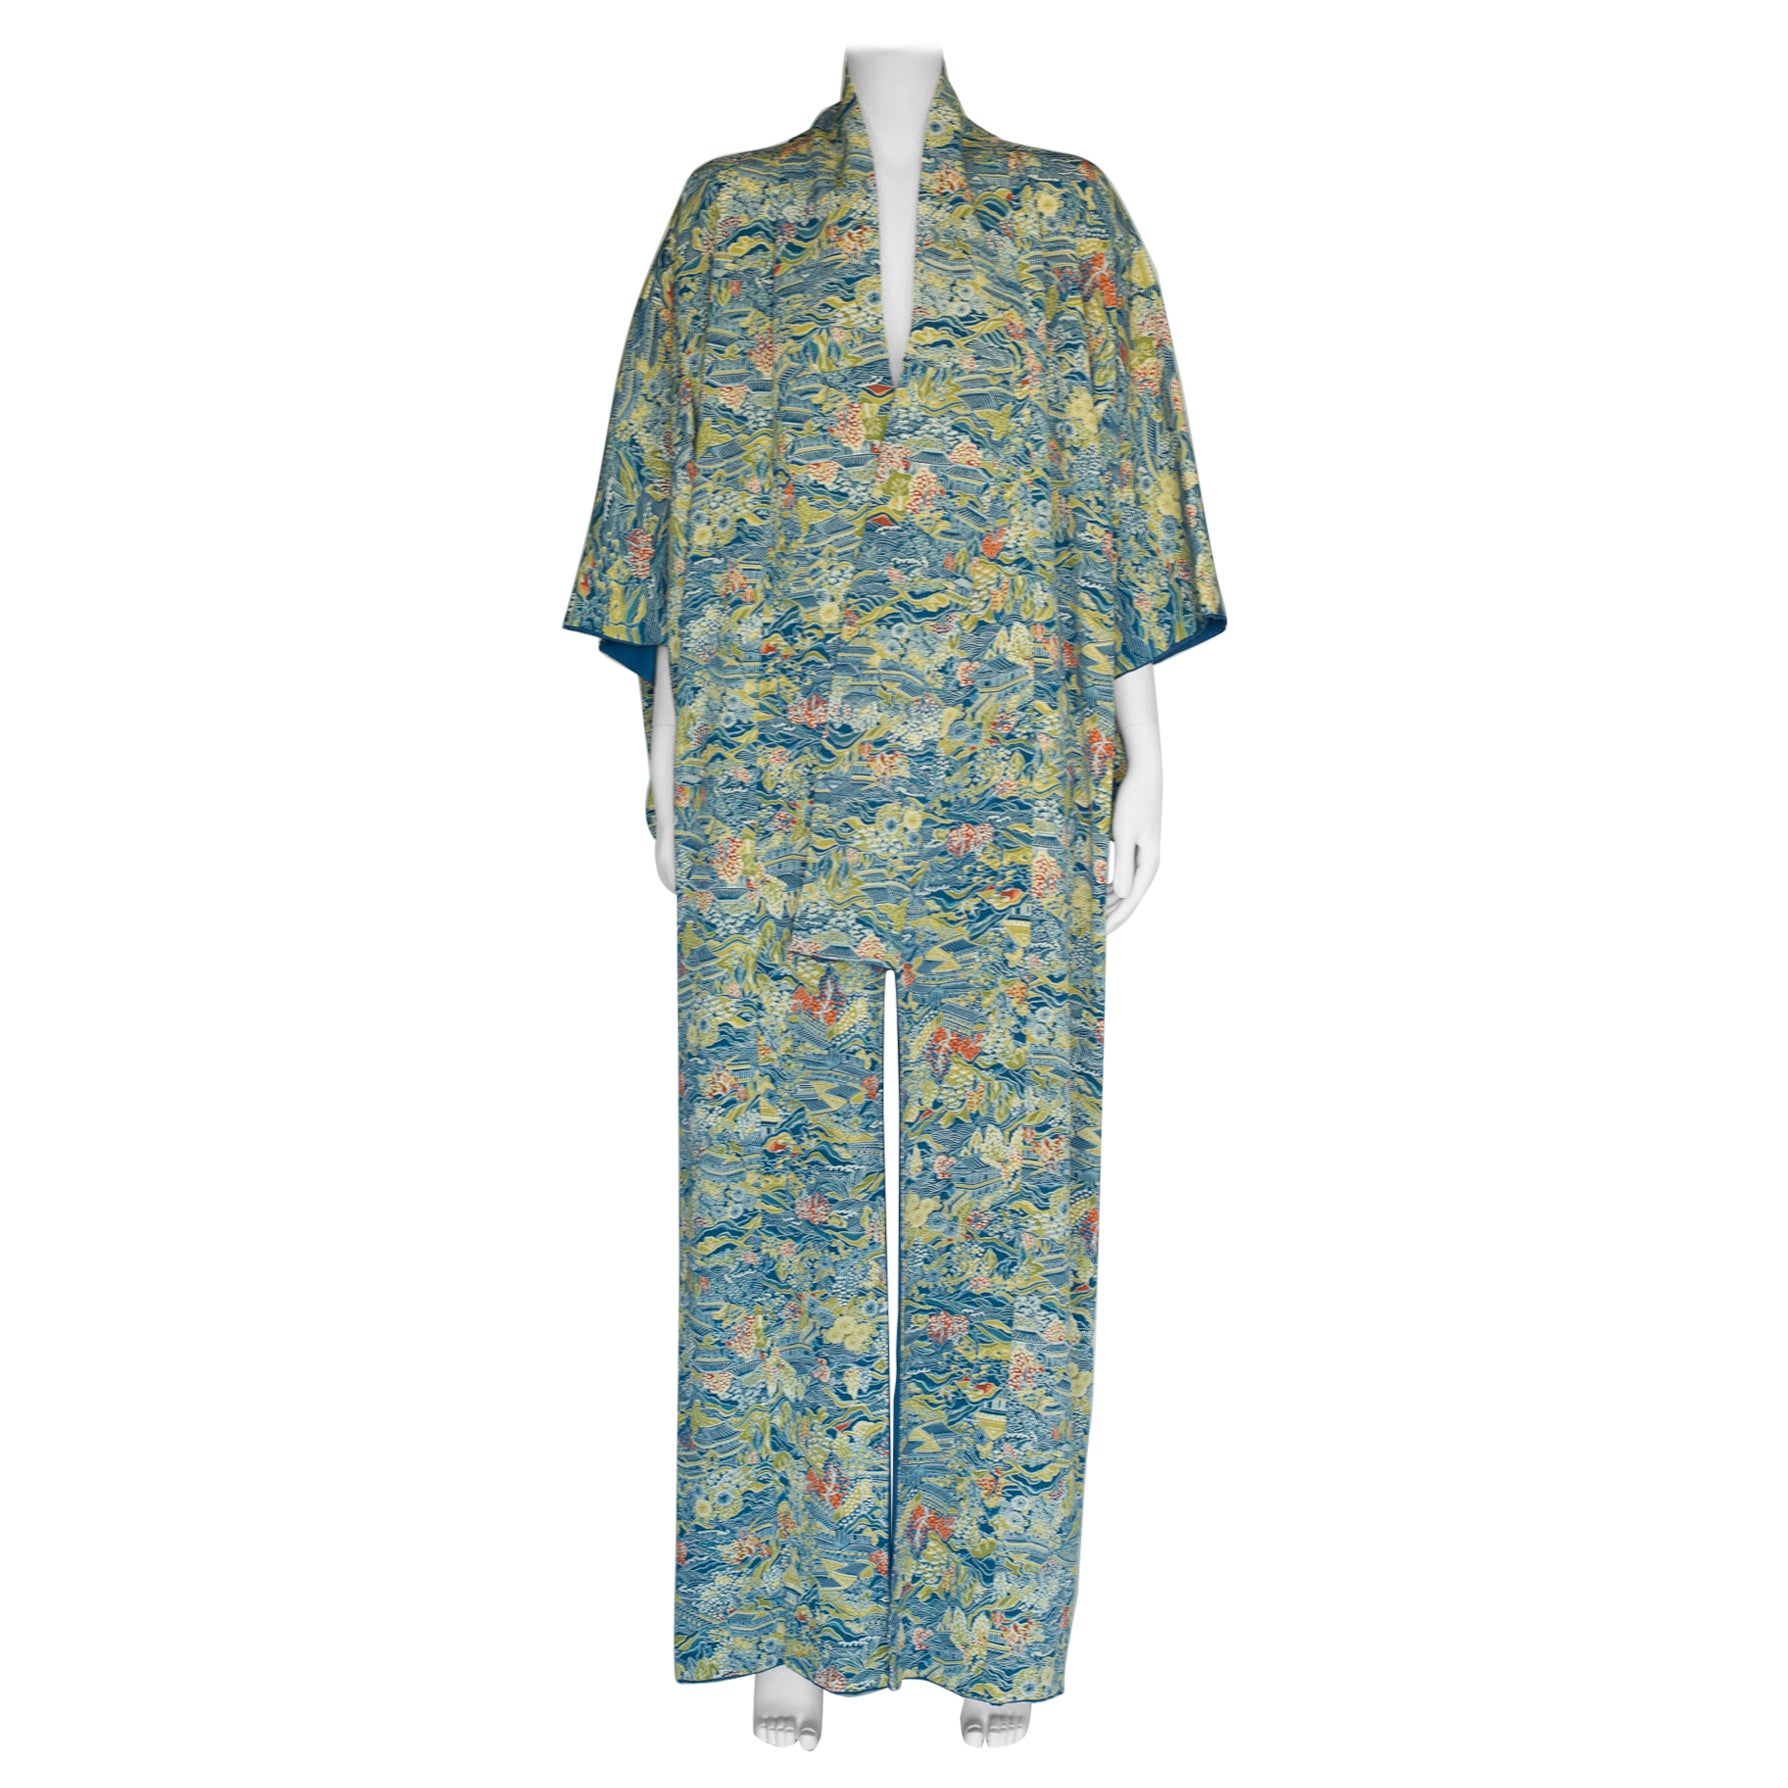 Manteau kimono en soie et imprimé paysage des années 1930